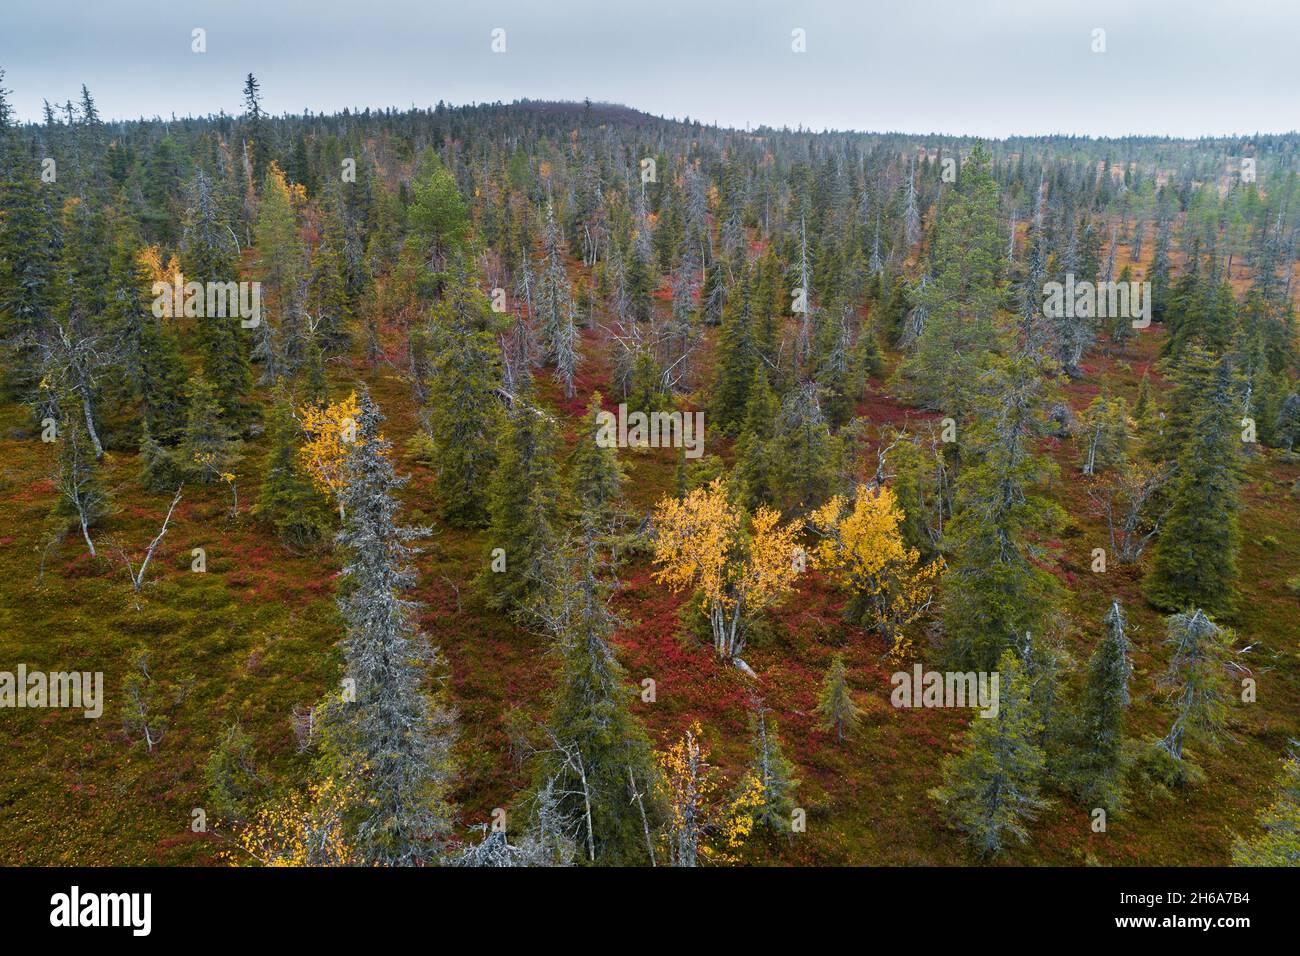 Vue sur la forêt de taïga automnale à côté d'une colline dans le parc national de Riisitunturi, dans le nord de la Finlande. Banque D'Images